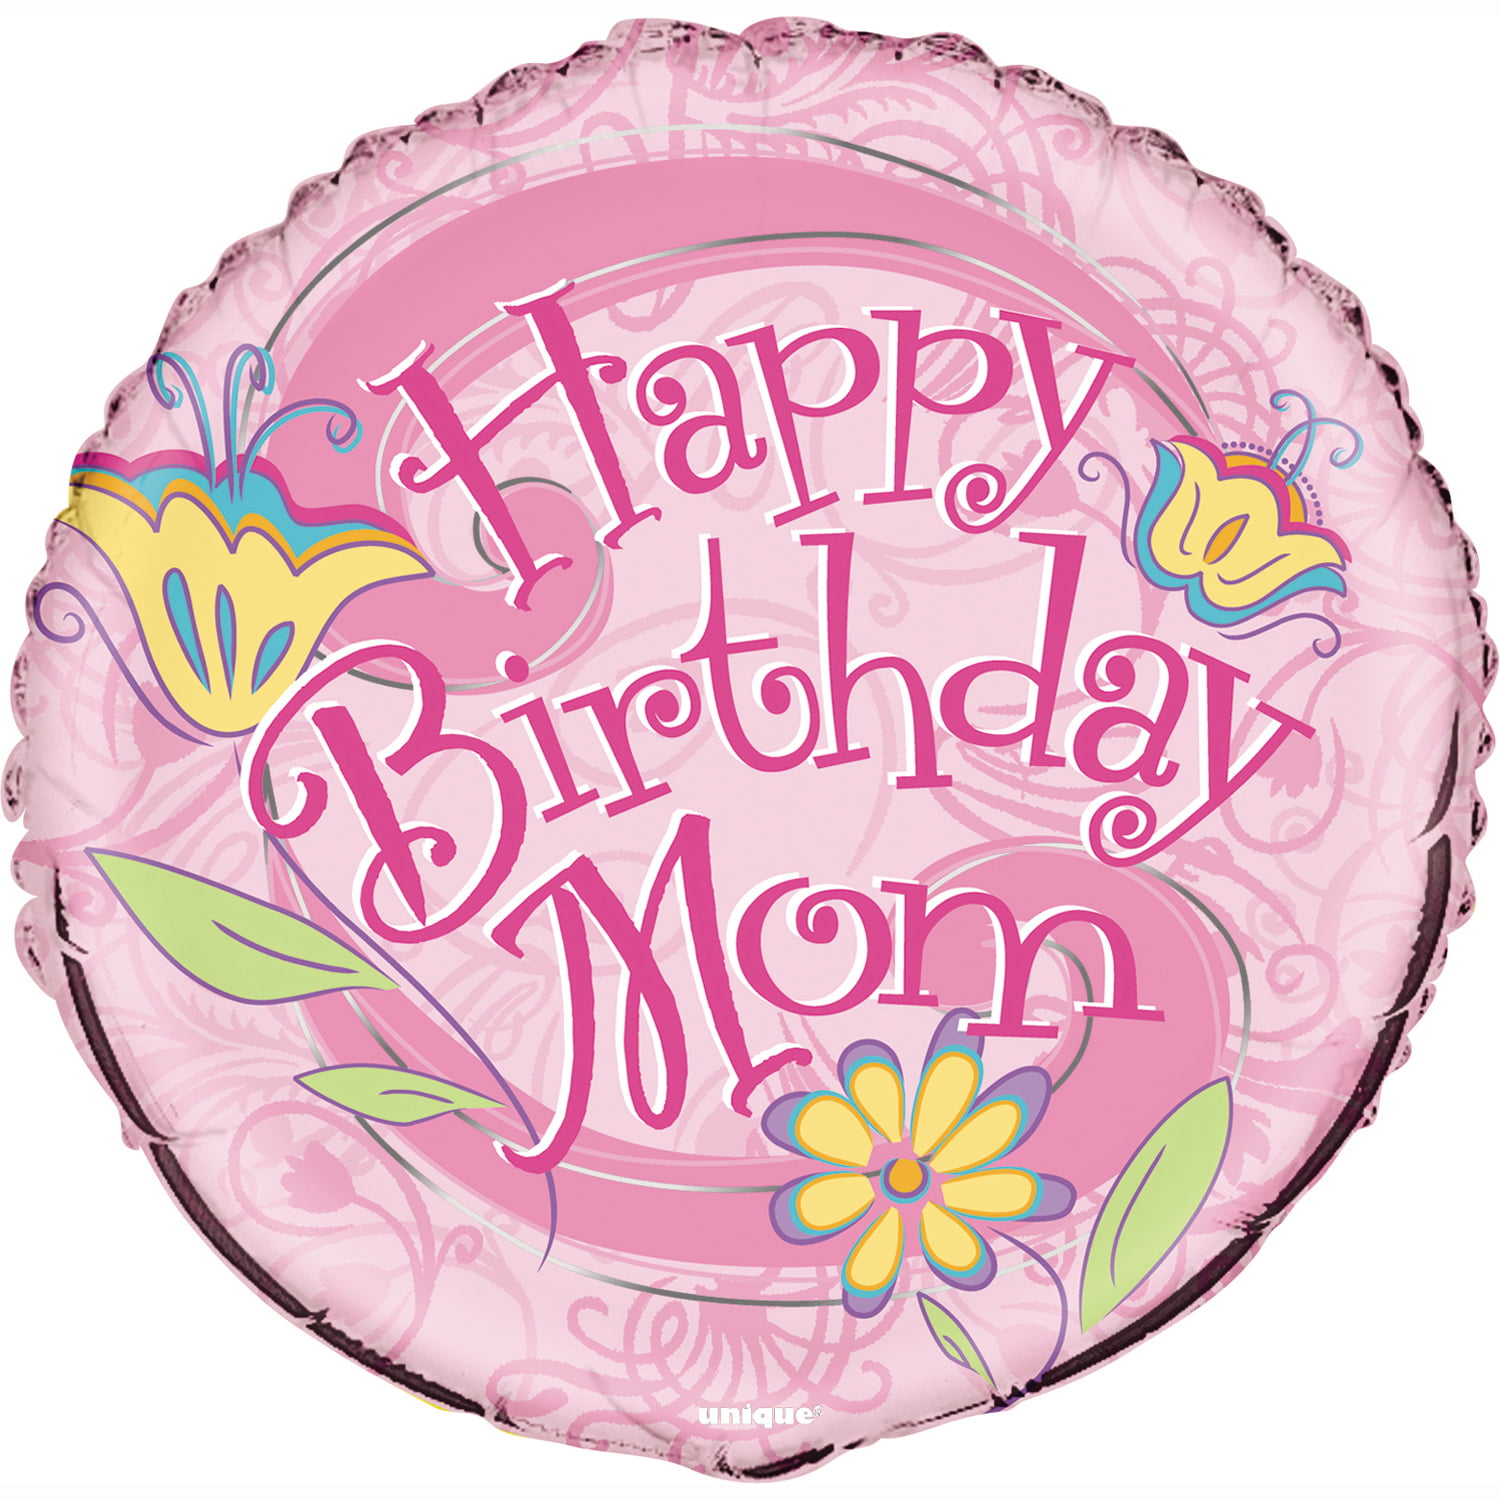 11131 - 18 Happy Birthday Mom